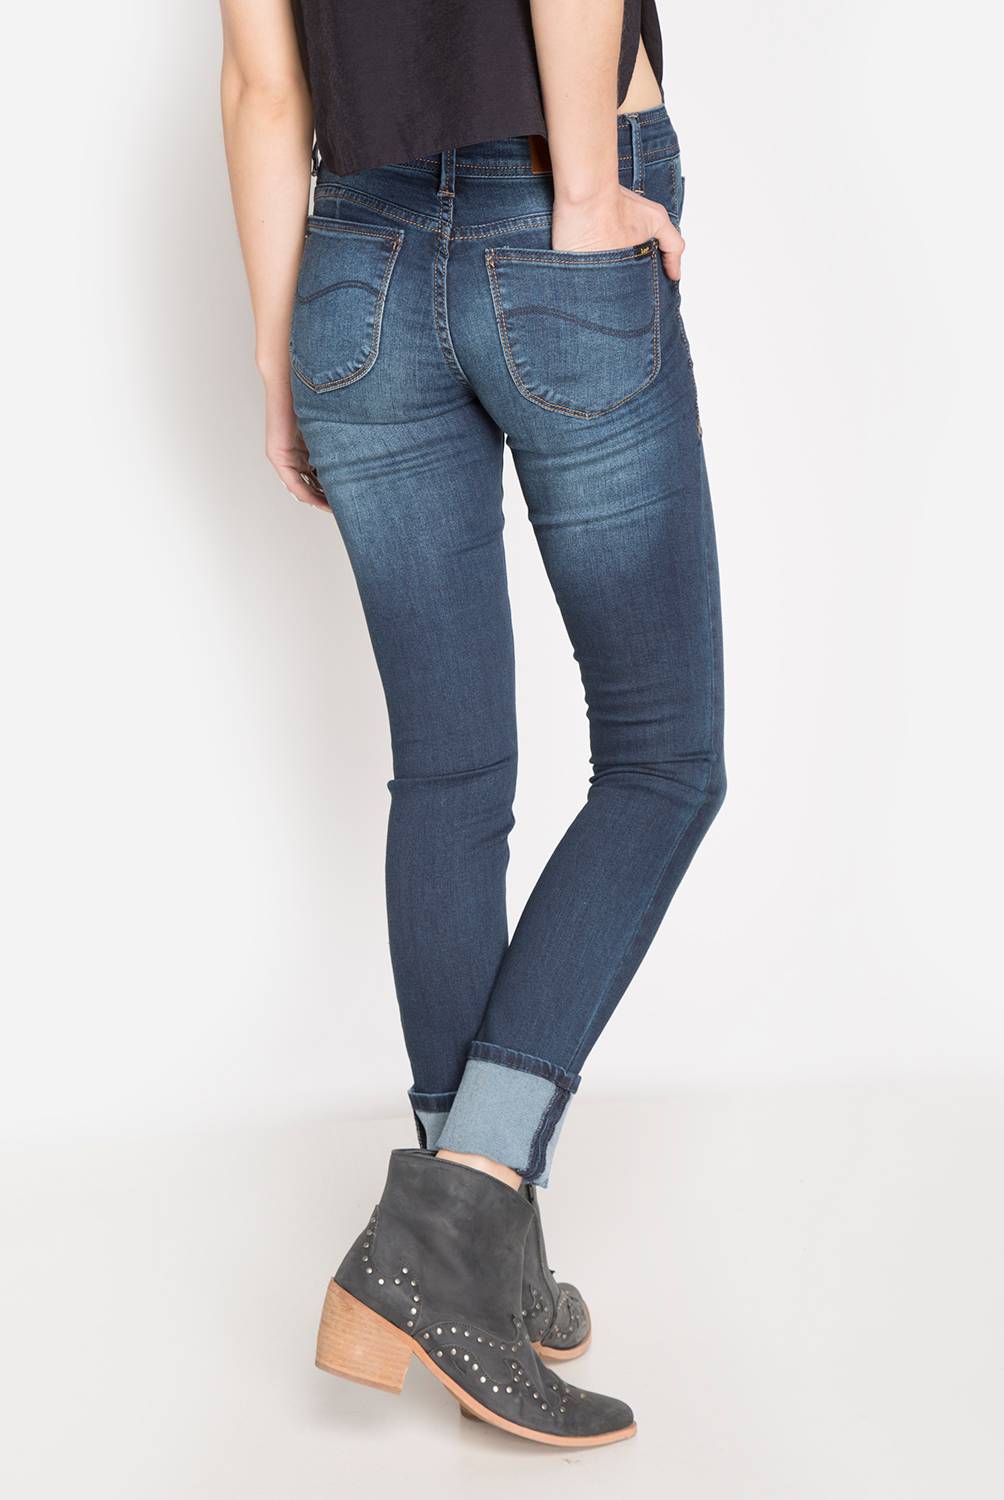 LEE - Jeans Skinny Mujer